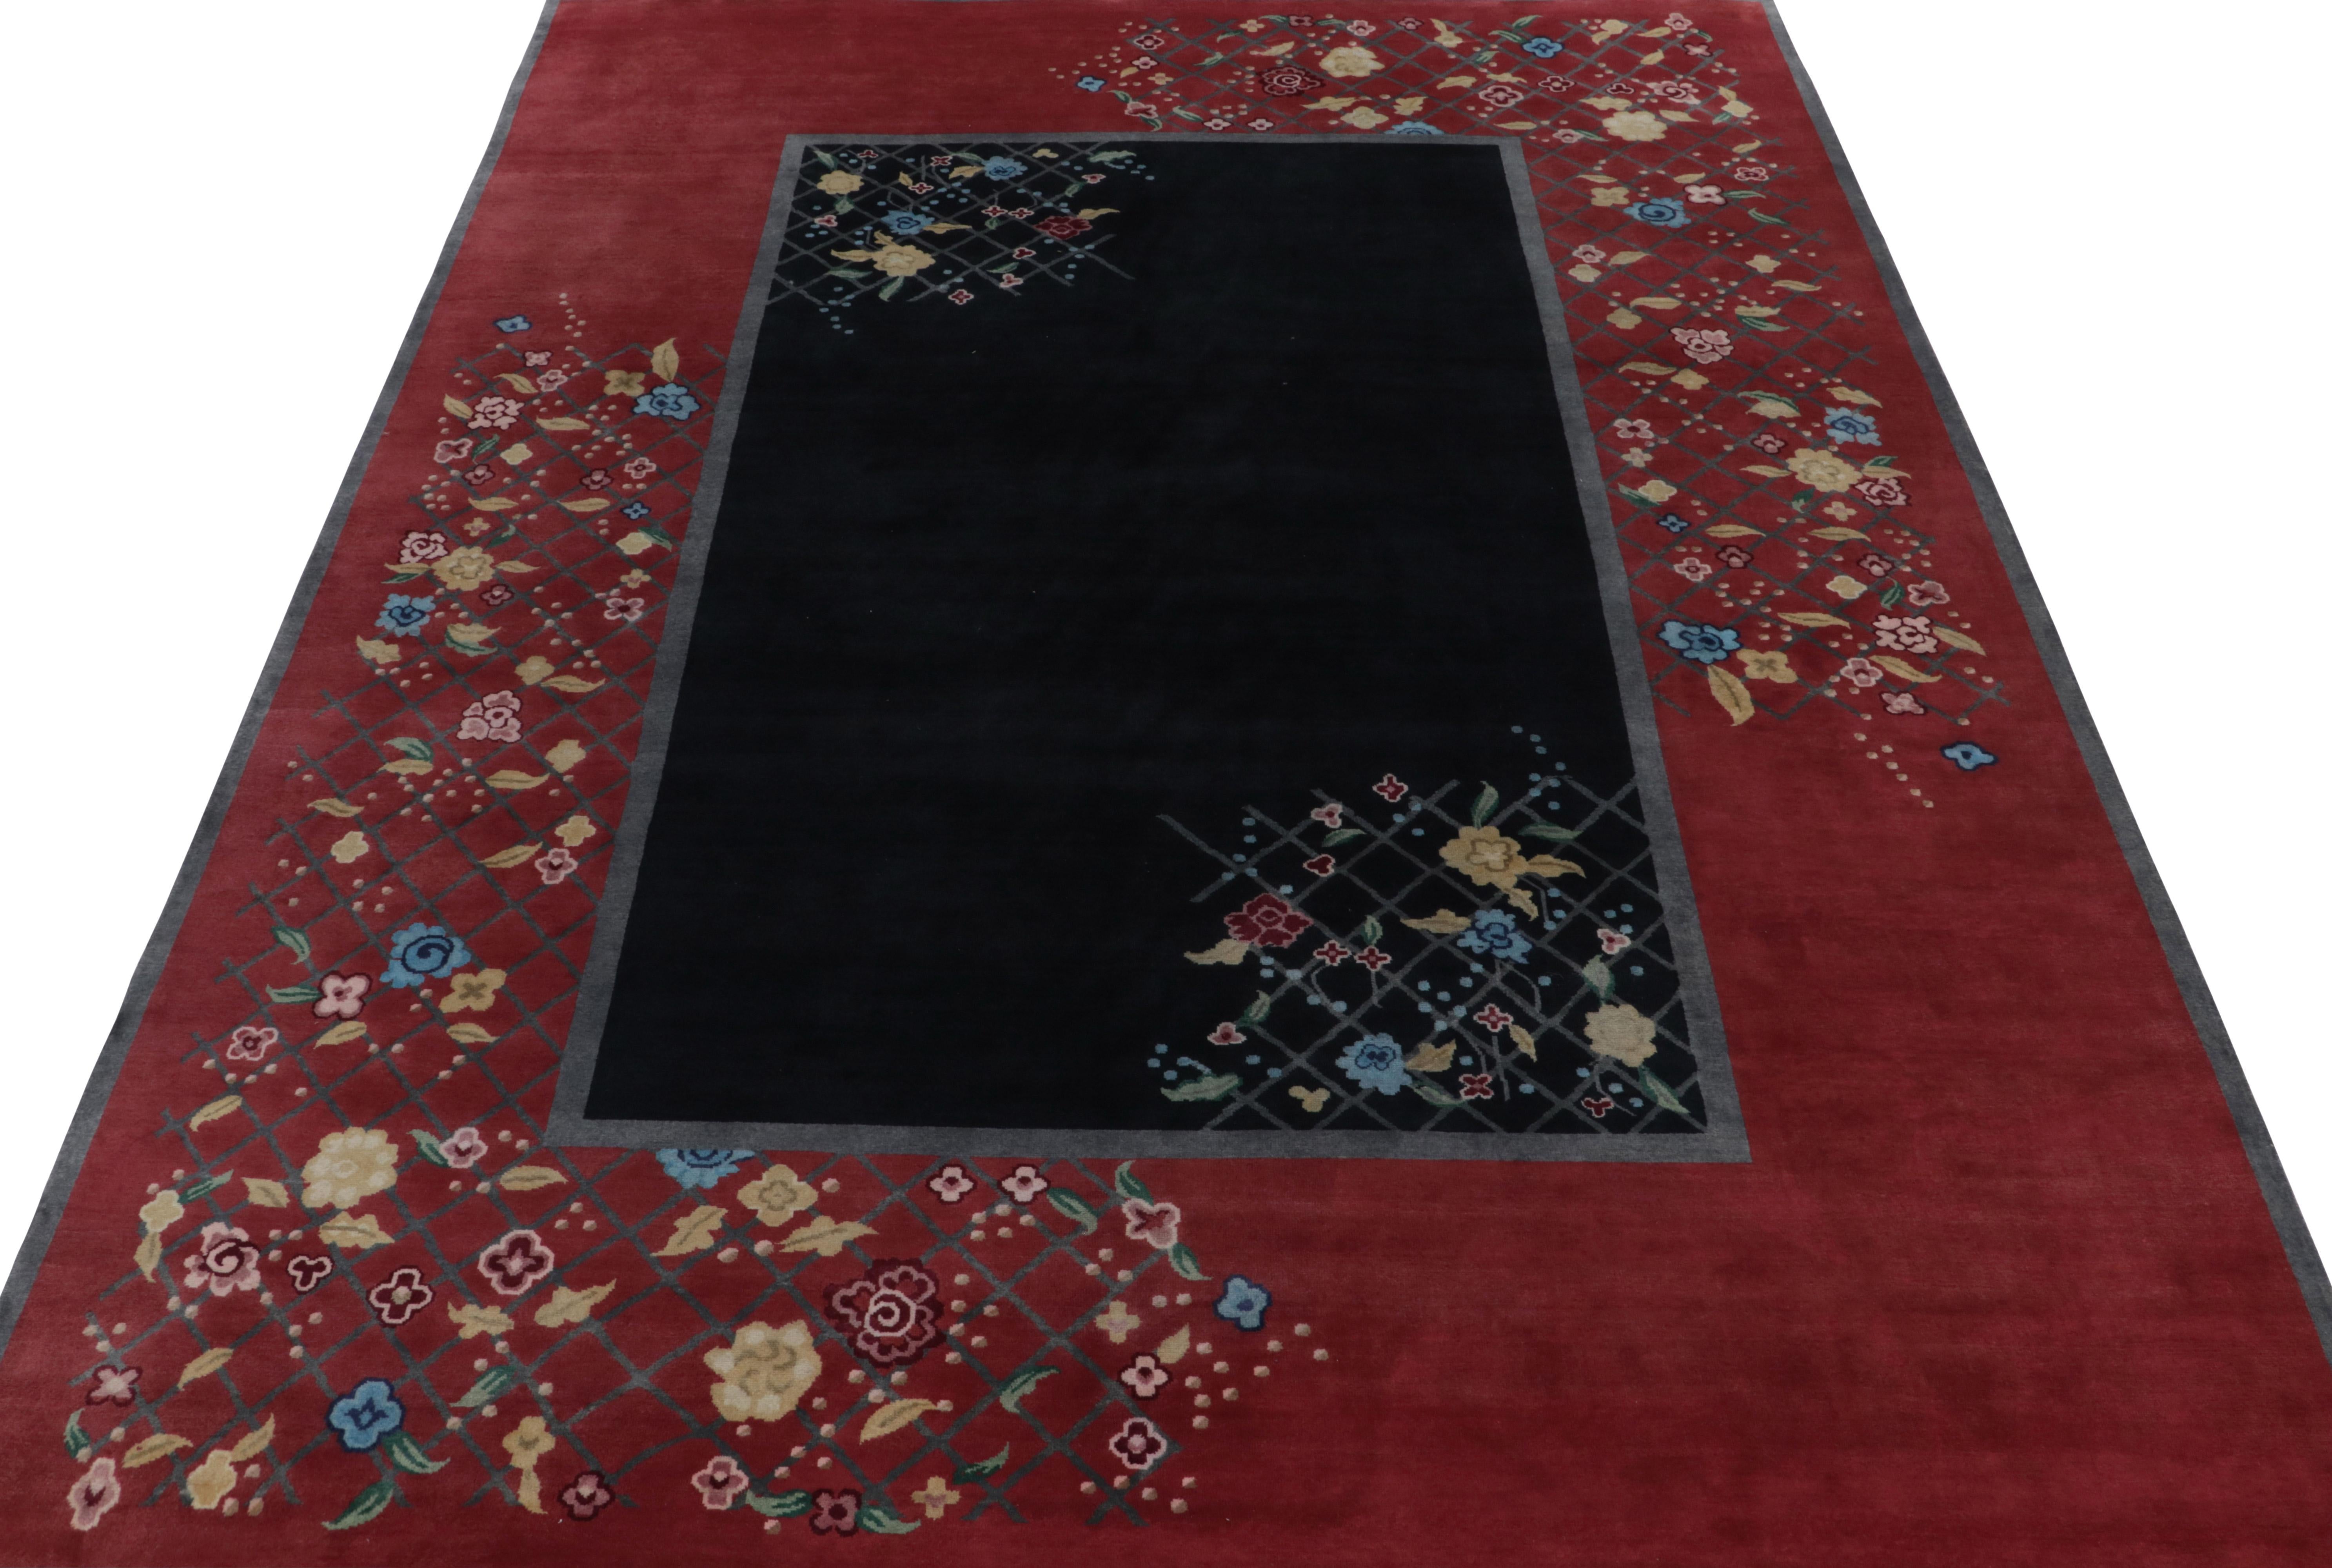 Chinesischer Teppich im Deko-Stil von Teppich & Kilims in Schwarz und Rot mit bunten Blumenmustern (Art déco) im Angebot